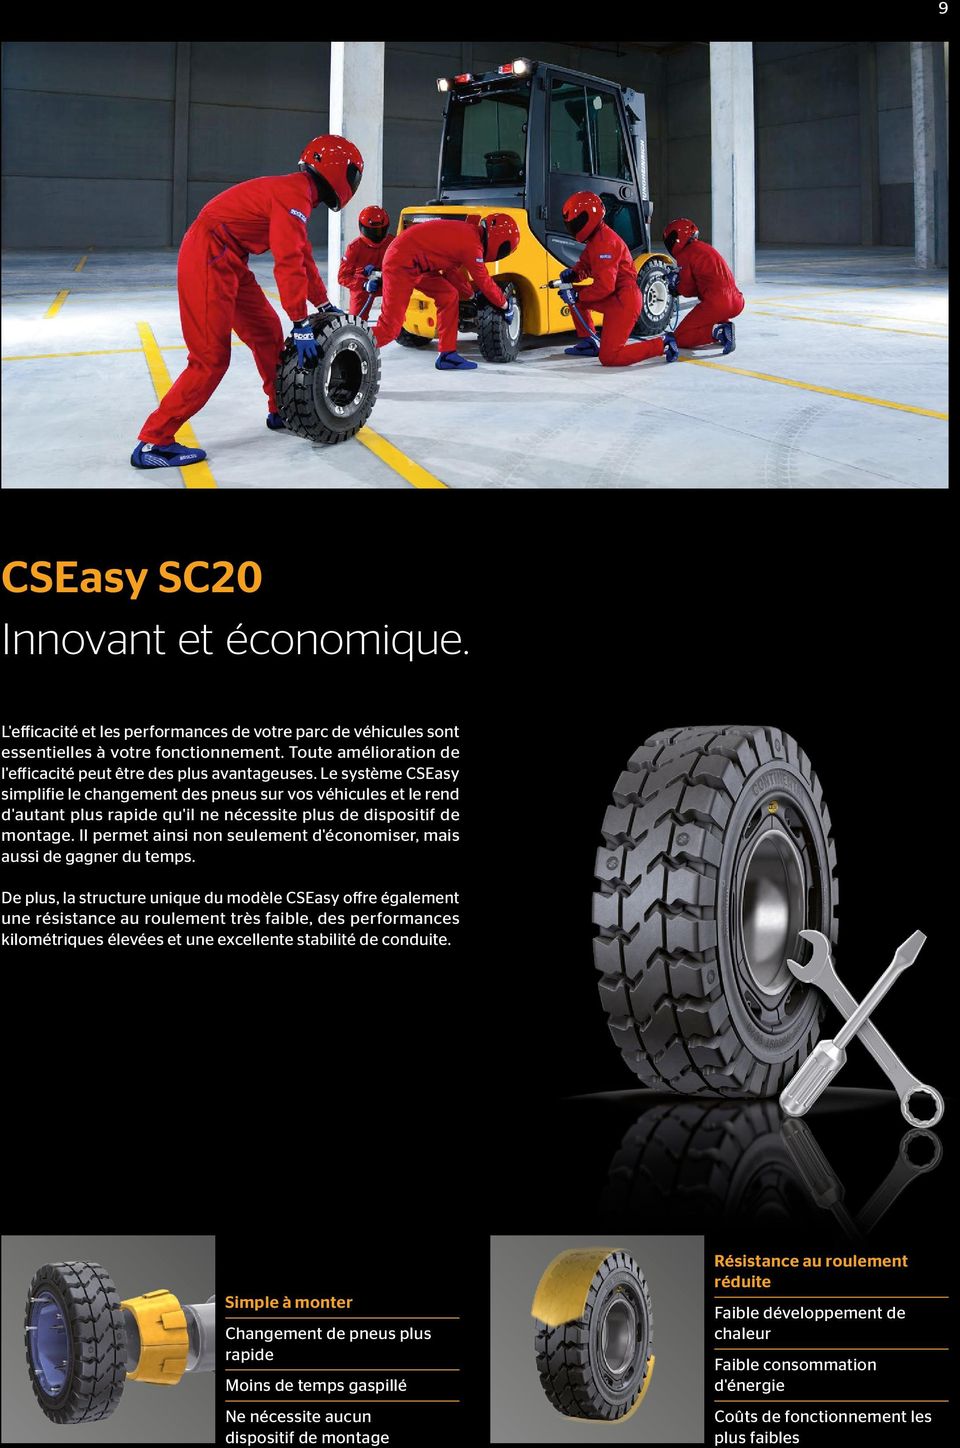 Le système CSEasy simplifie le changement des pneus sur vos véhicules et le rend d'autant plus rapide qu'il ne nécessite plus de dispositif de montage.